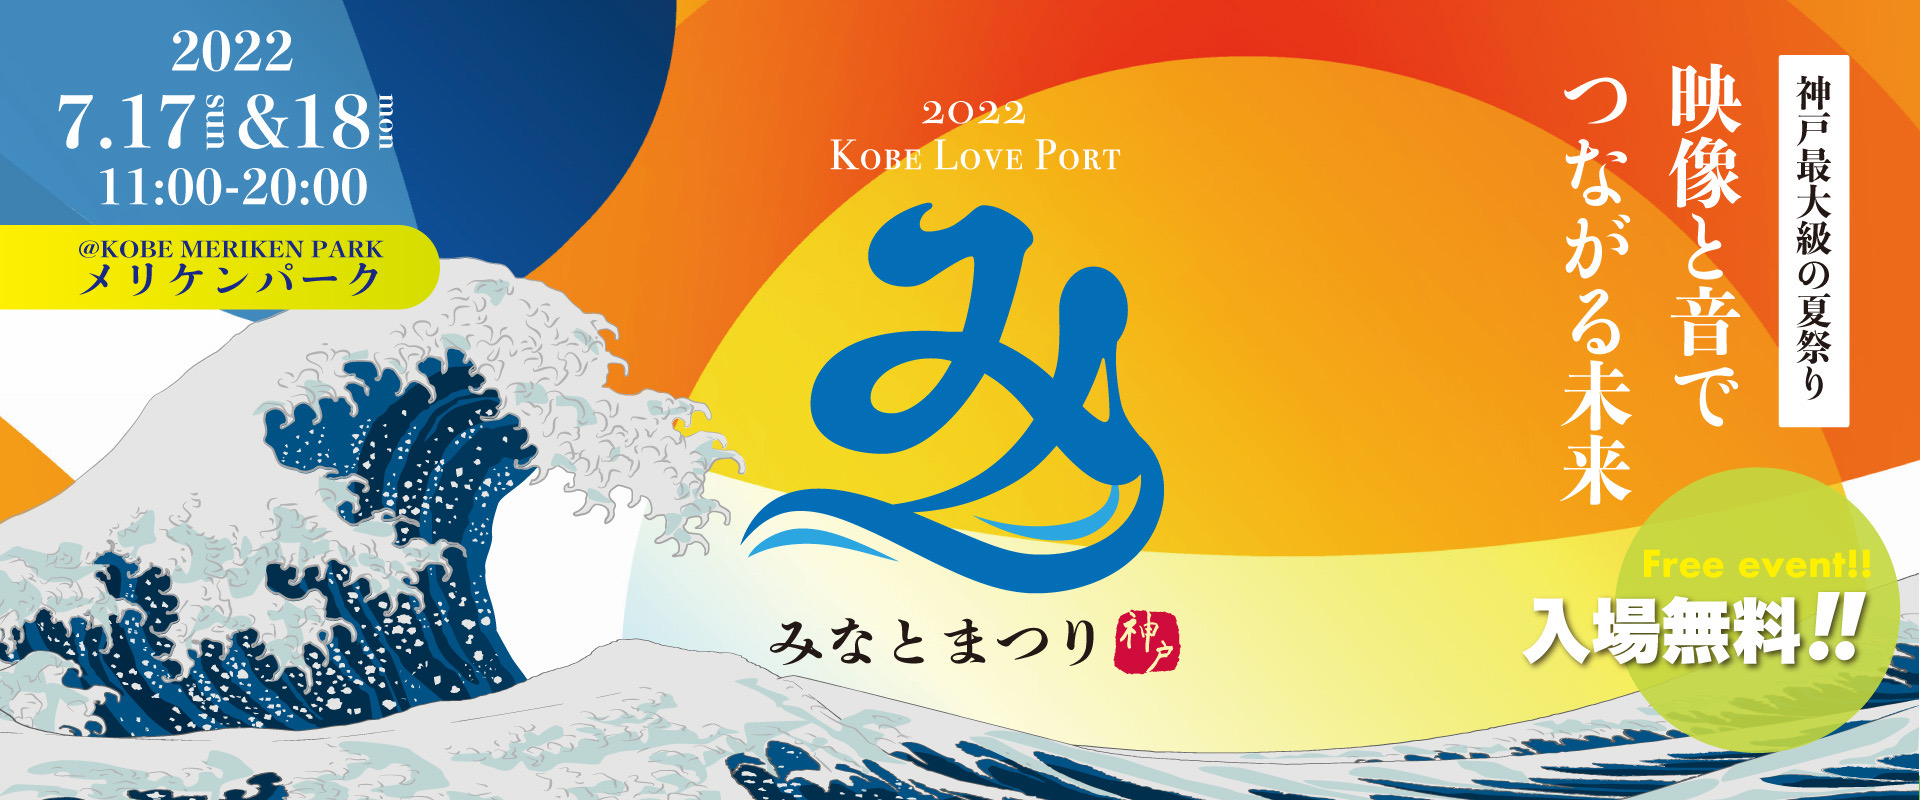 第21回Kobe Love Port・みなとまつり